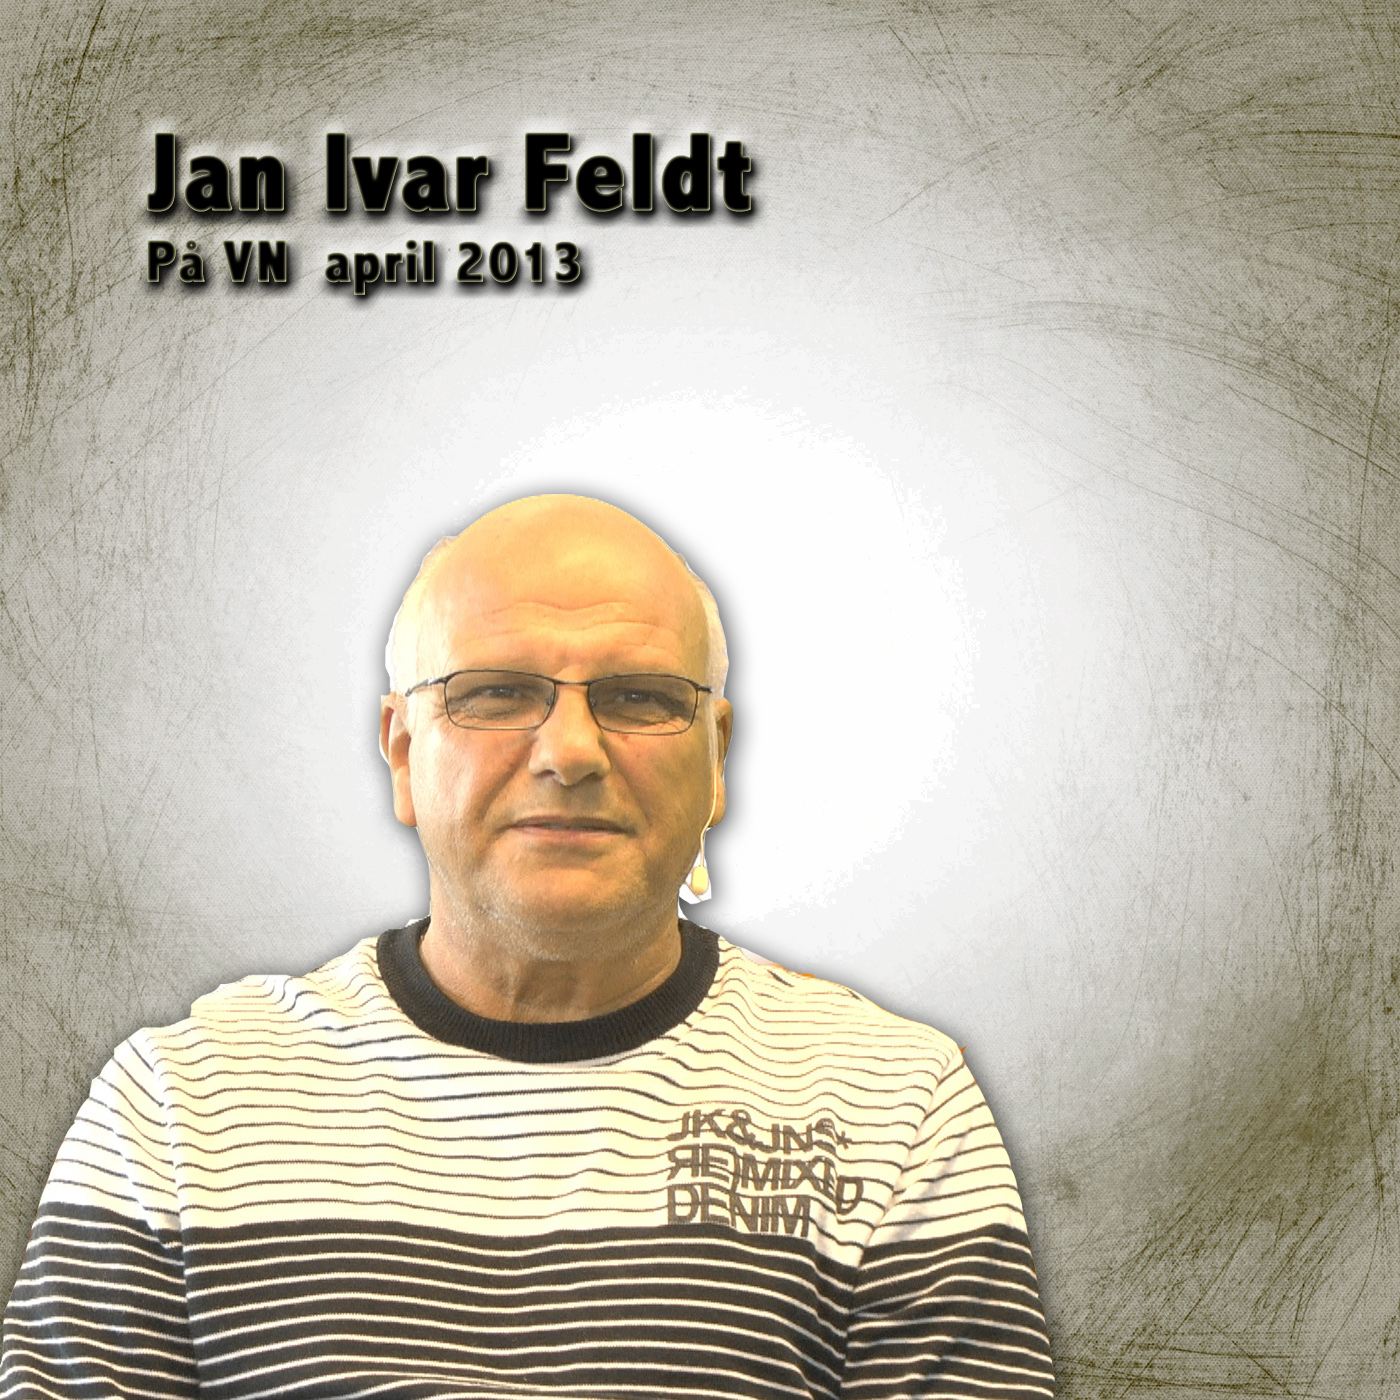 Jan Ivar Feldt